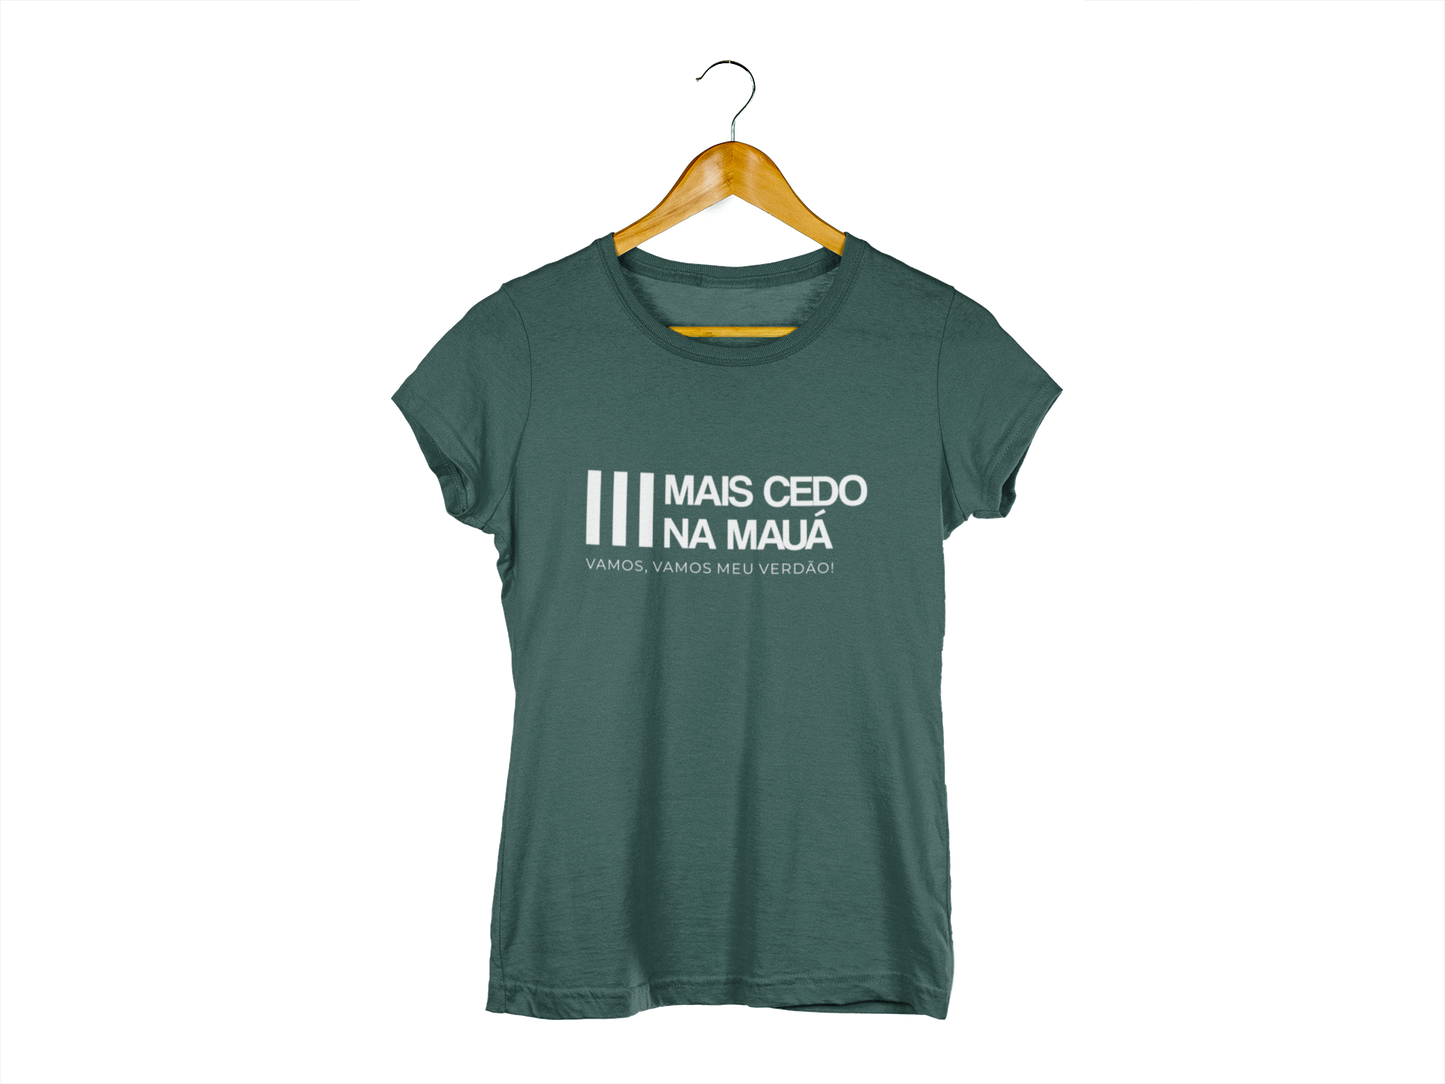 Camiseta Mais Cedo na Mauá - Verde (Produto Oficial - Licenciado)